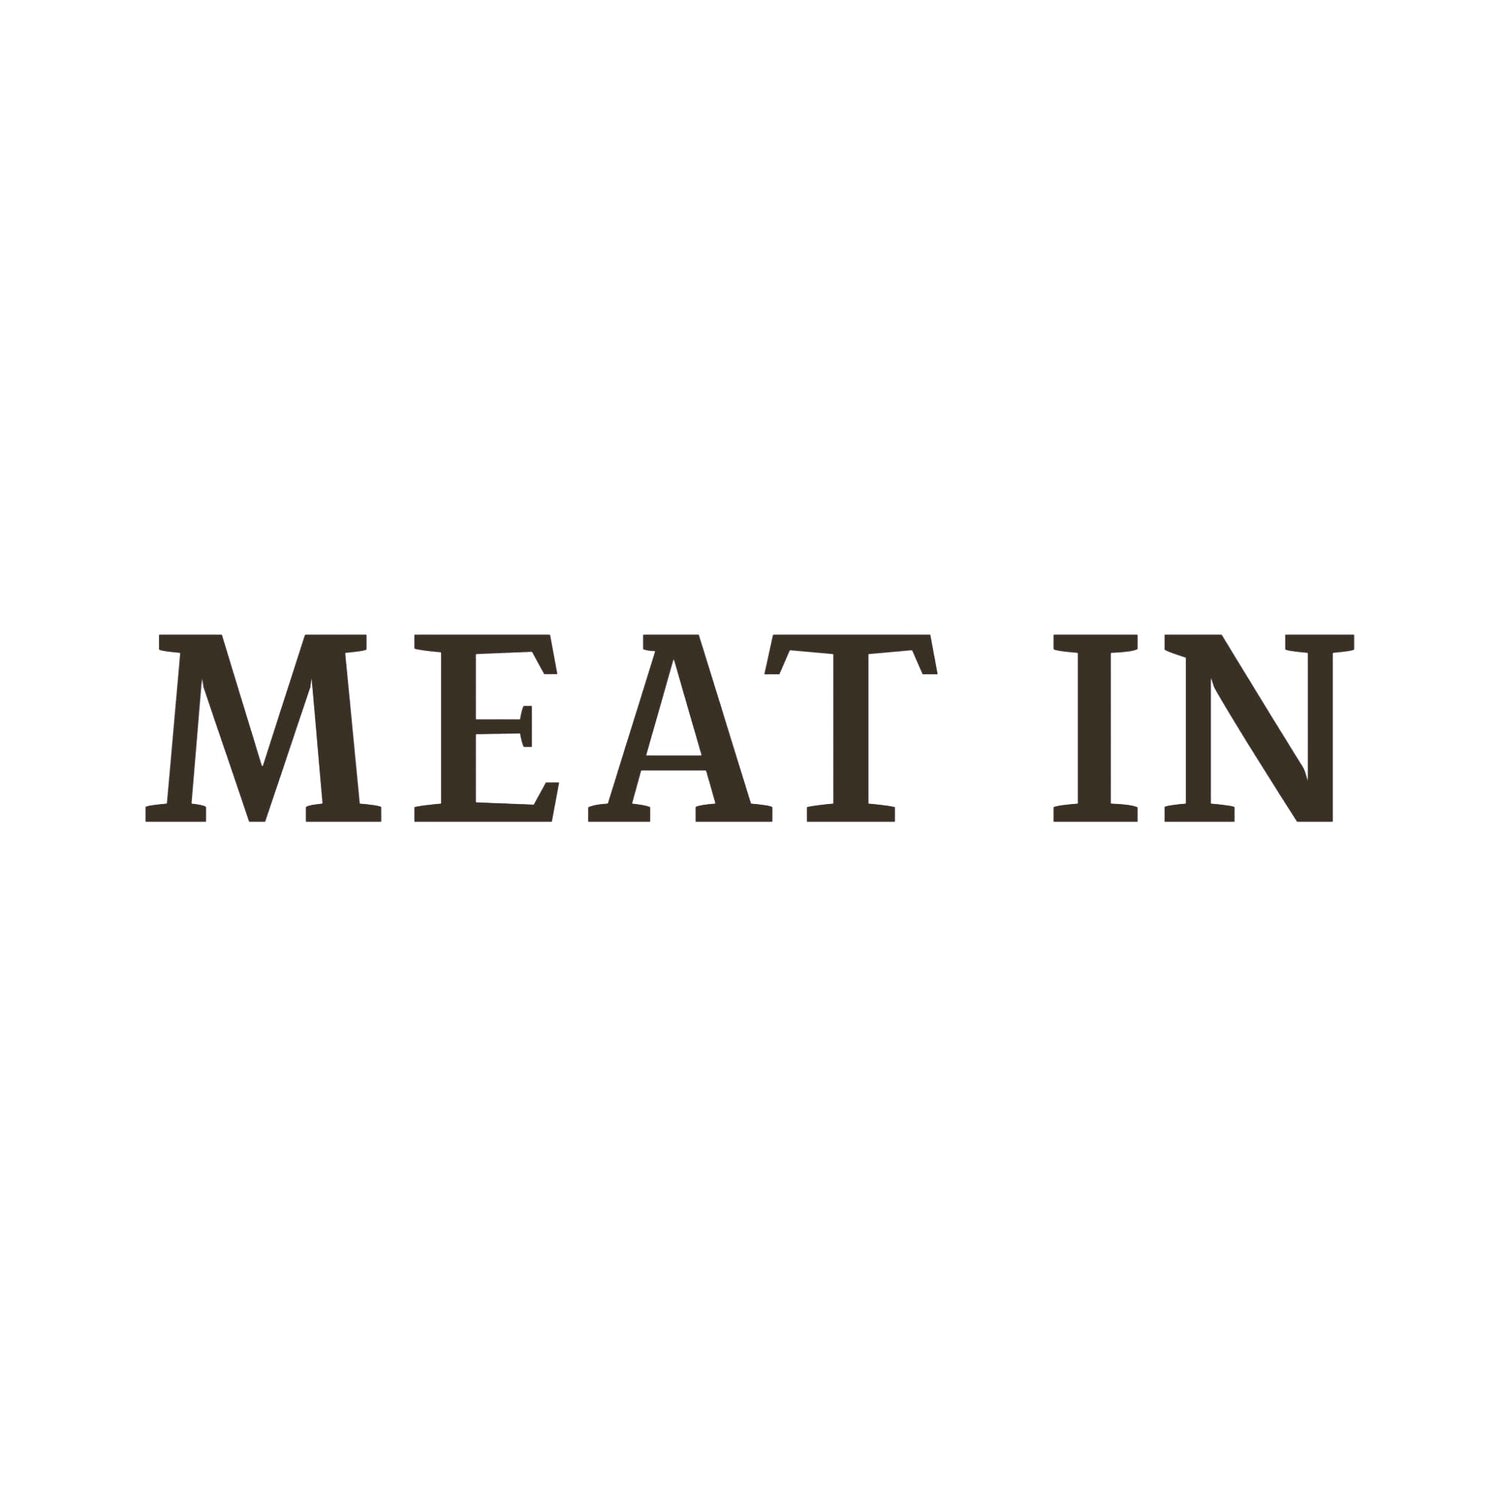 #Meat In#